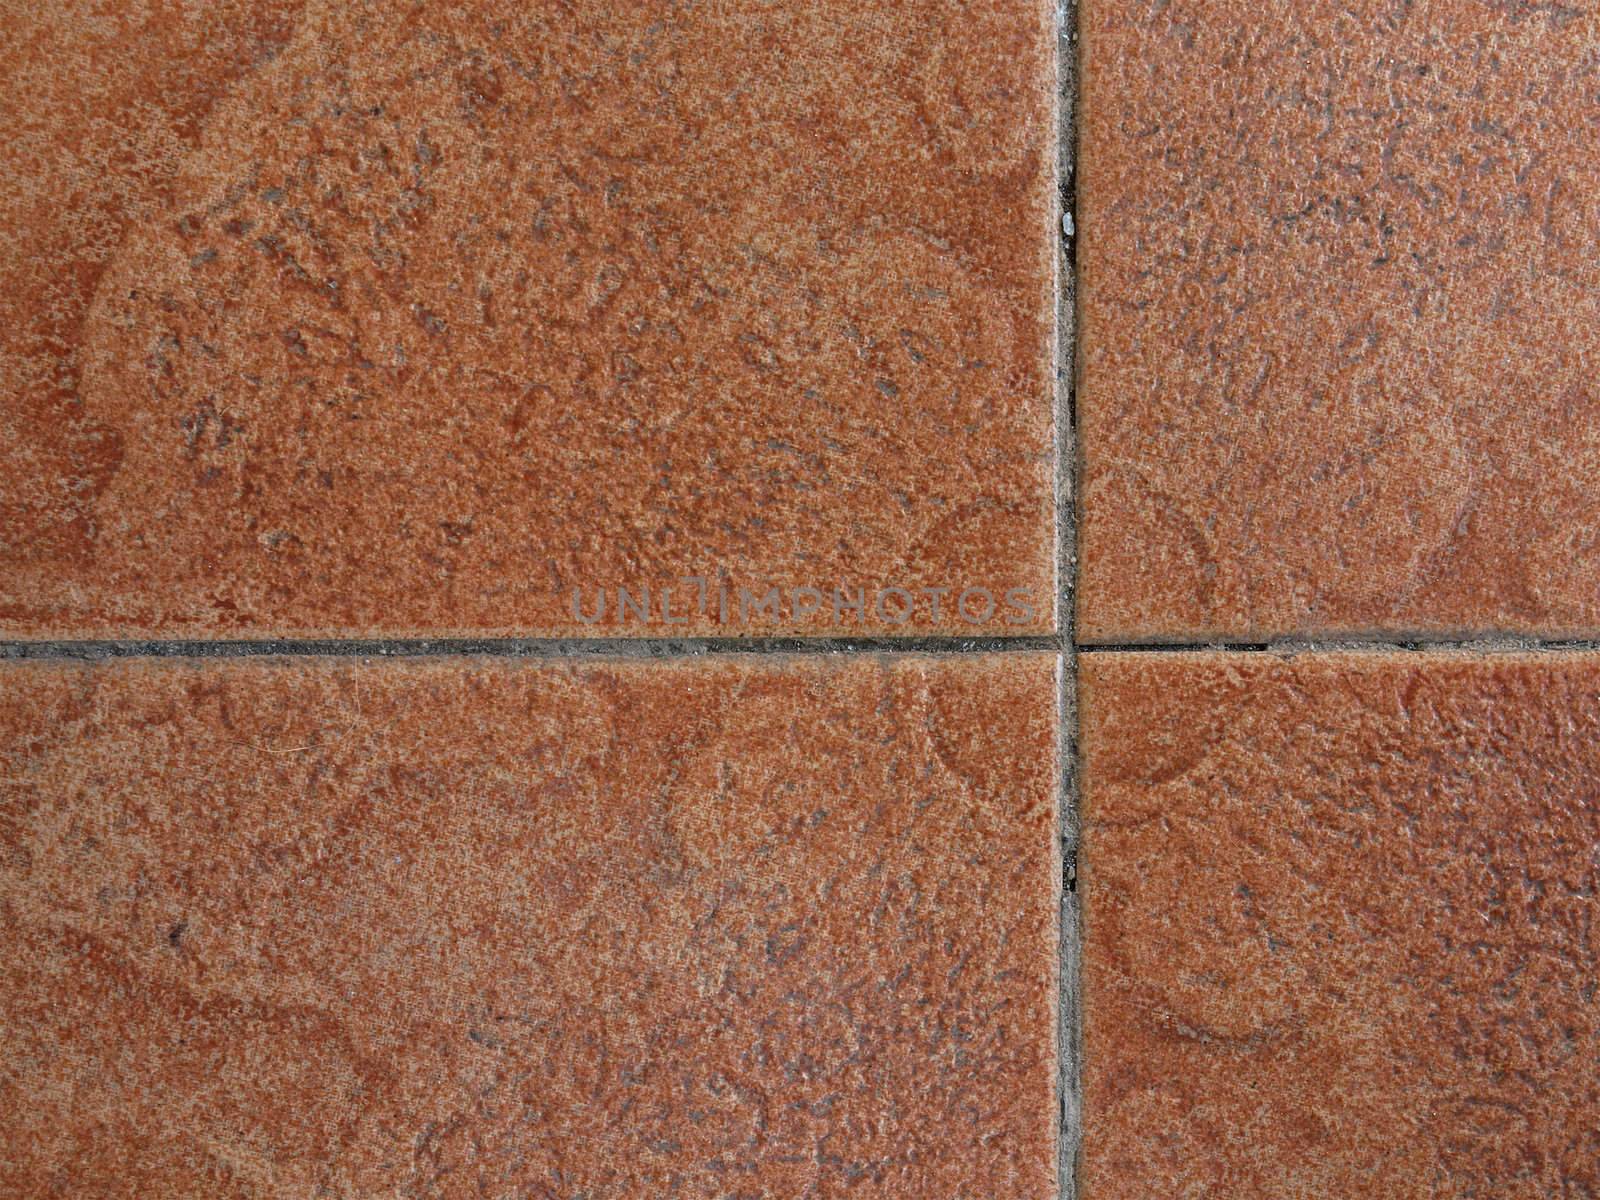 concrete floor tile by Ric510